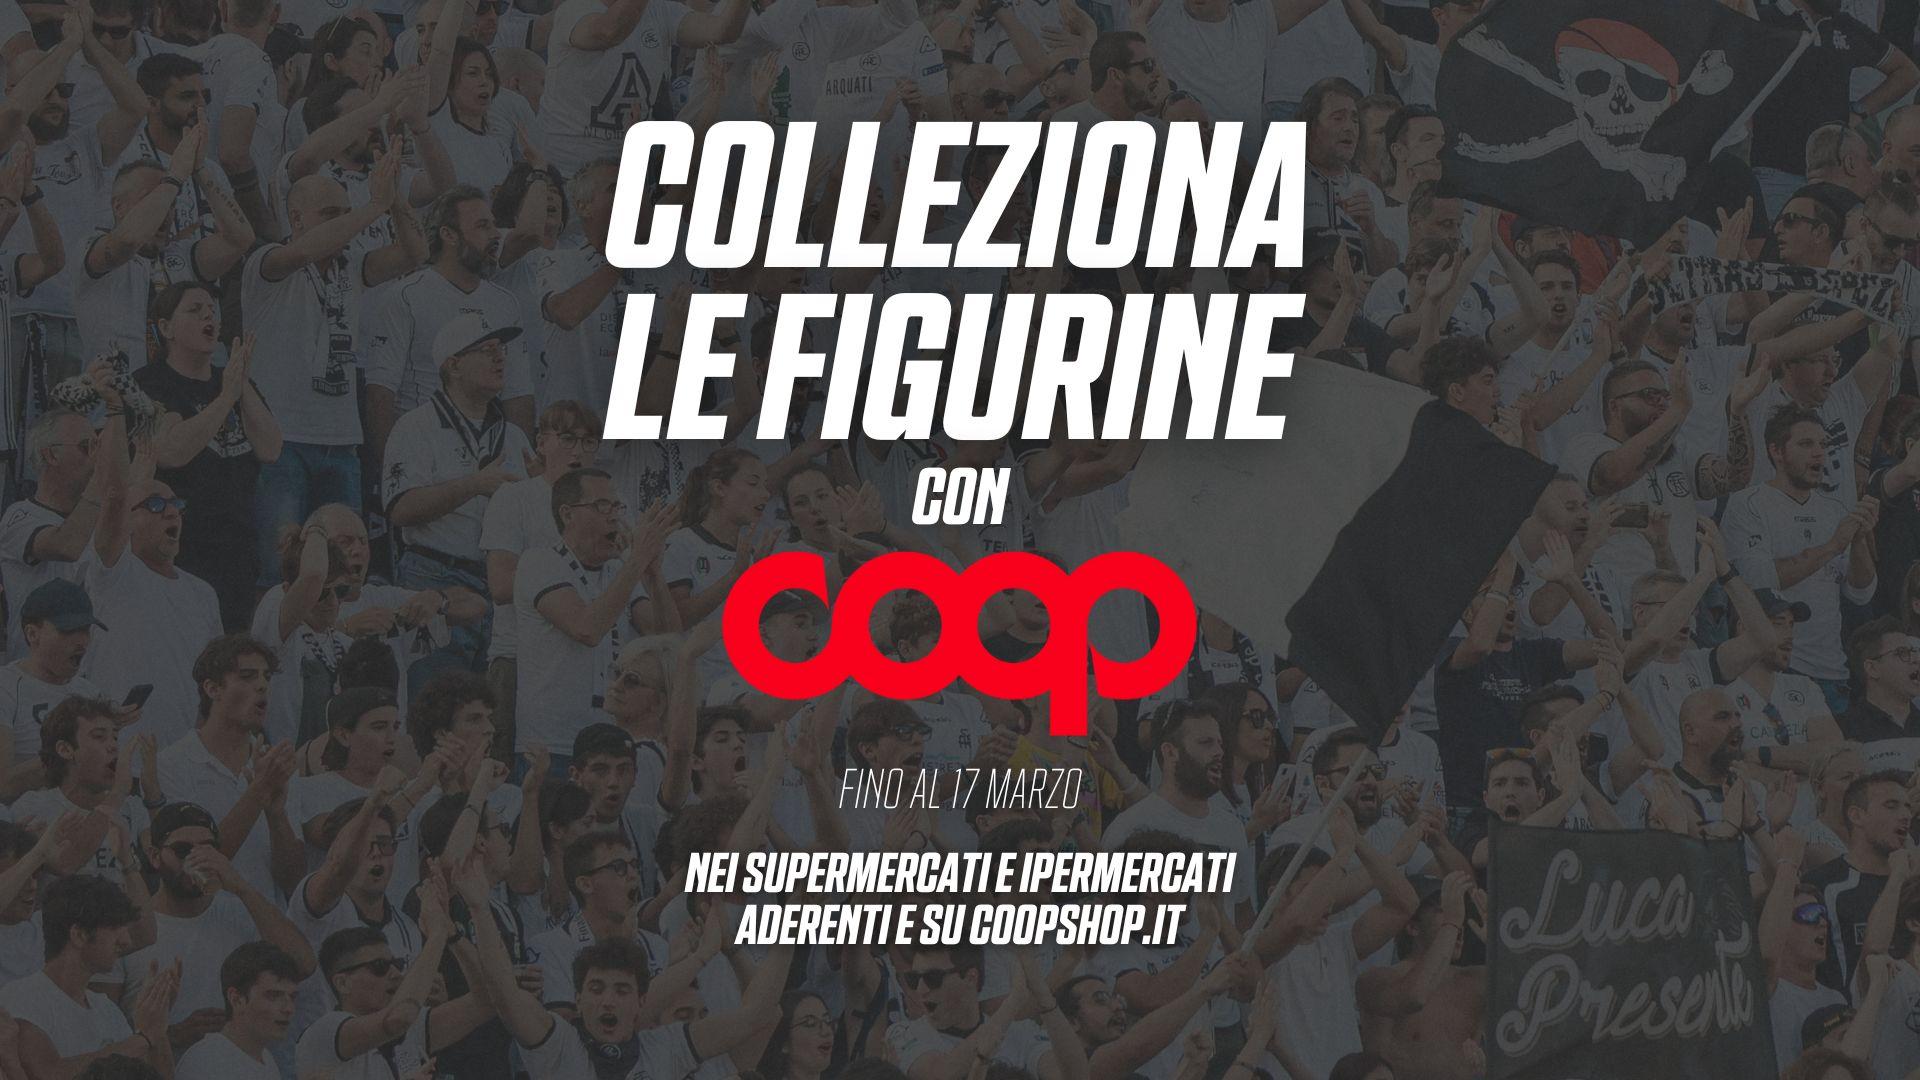 L'album ufficiale dello Spezia Calcio ti aspetta nei punti Coop e Ipercoop!